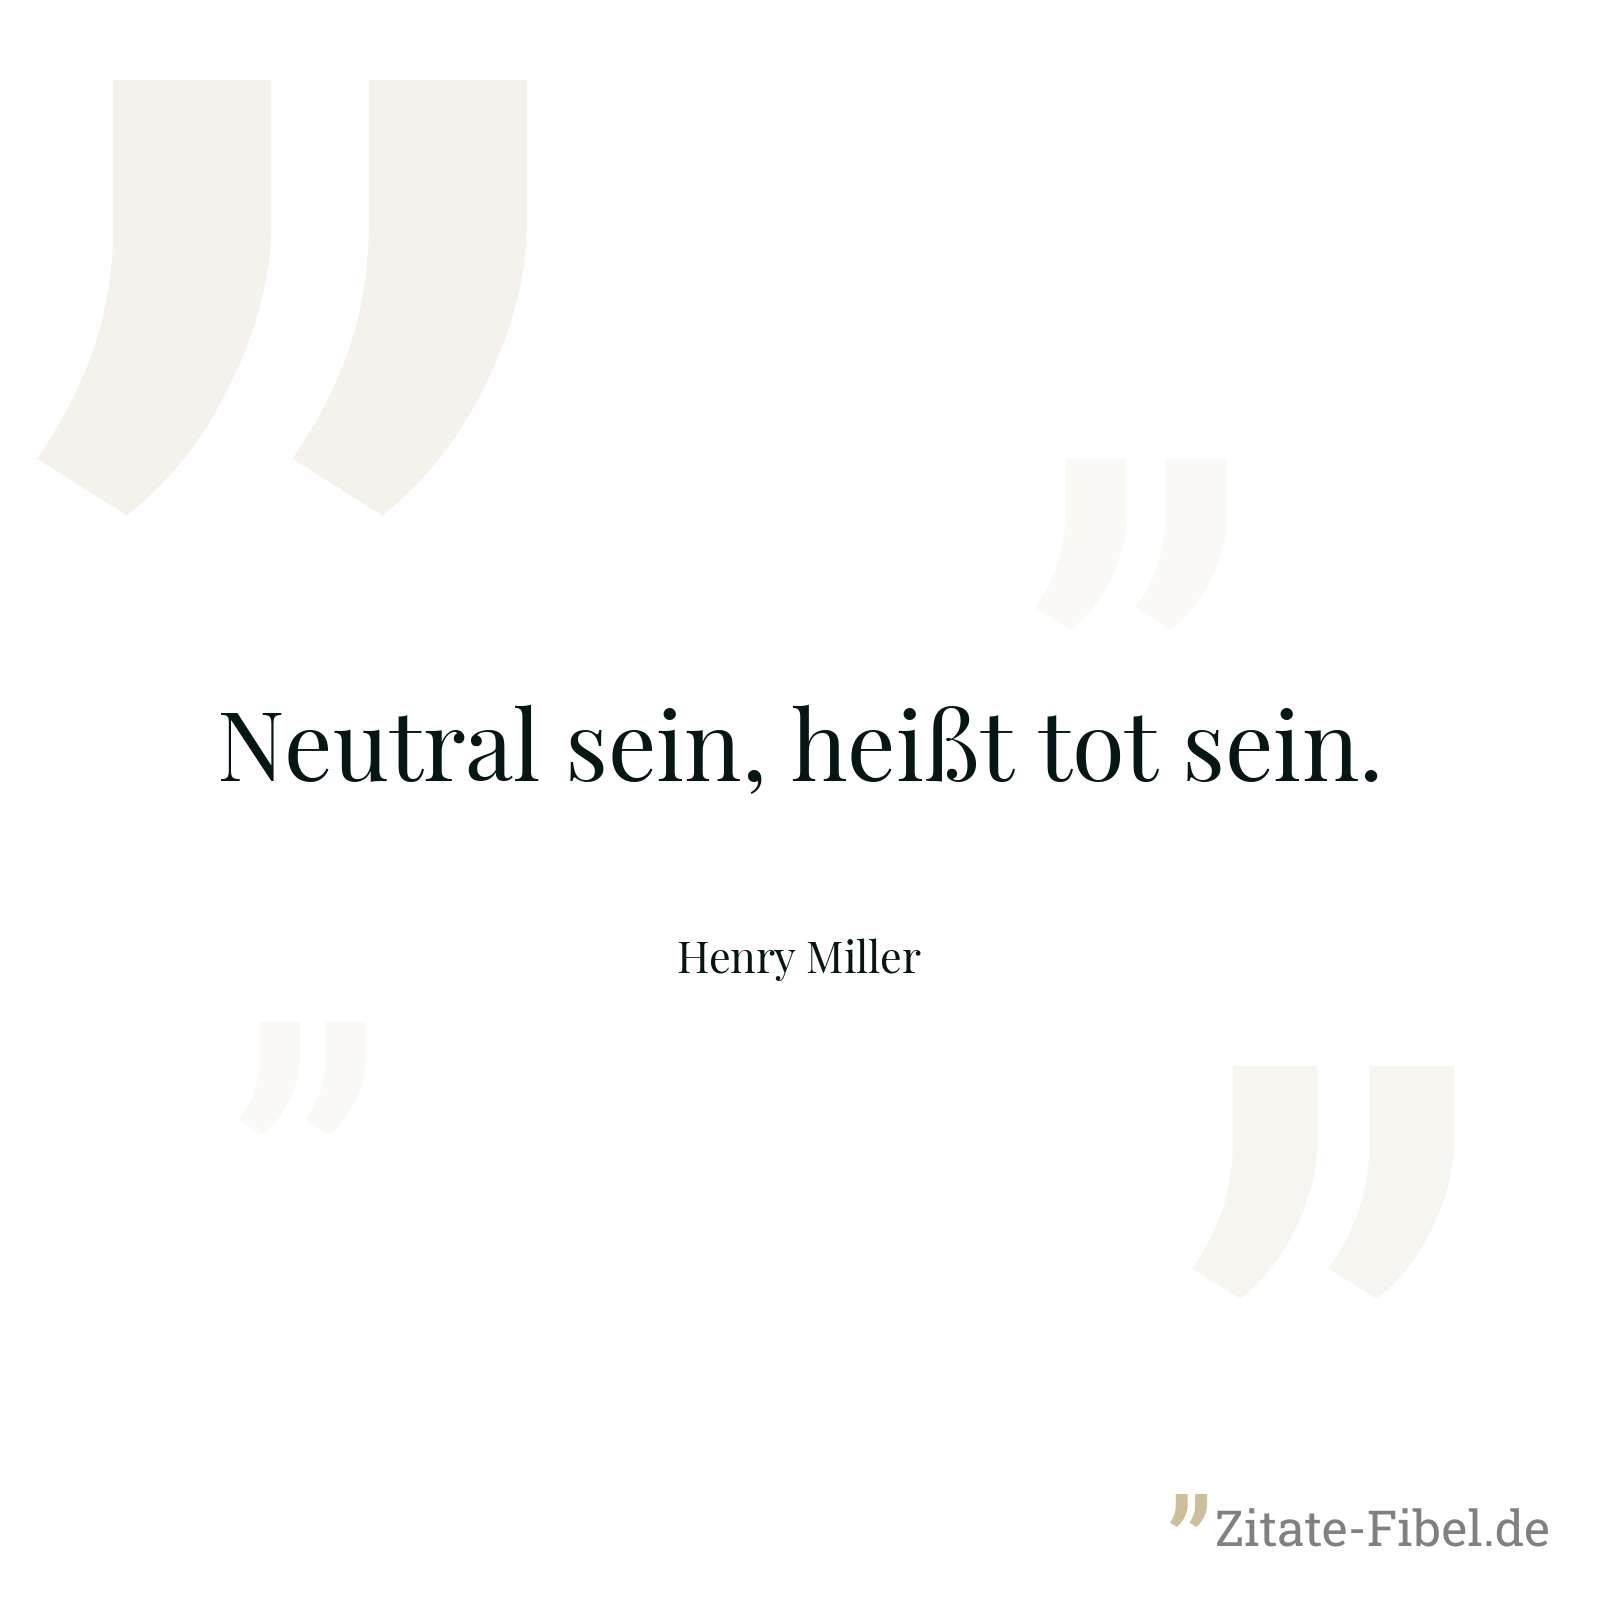 Neutral sein, heißt tot sein. - Henry Miller